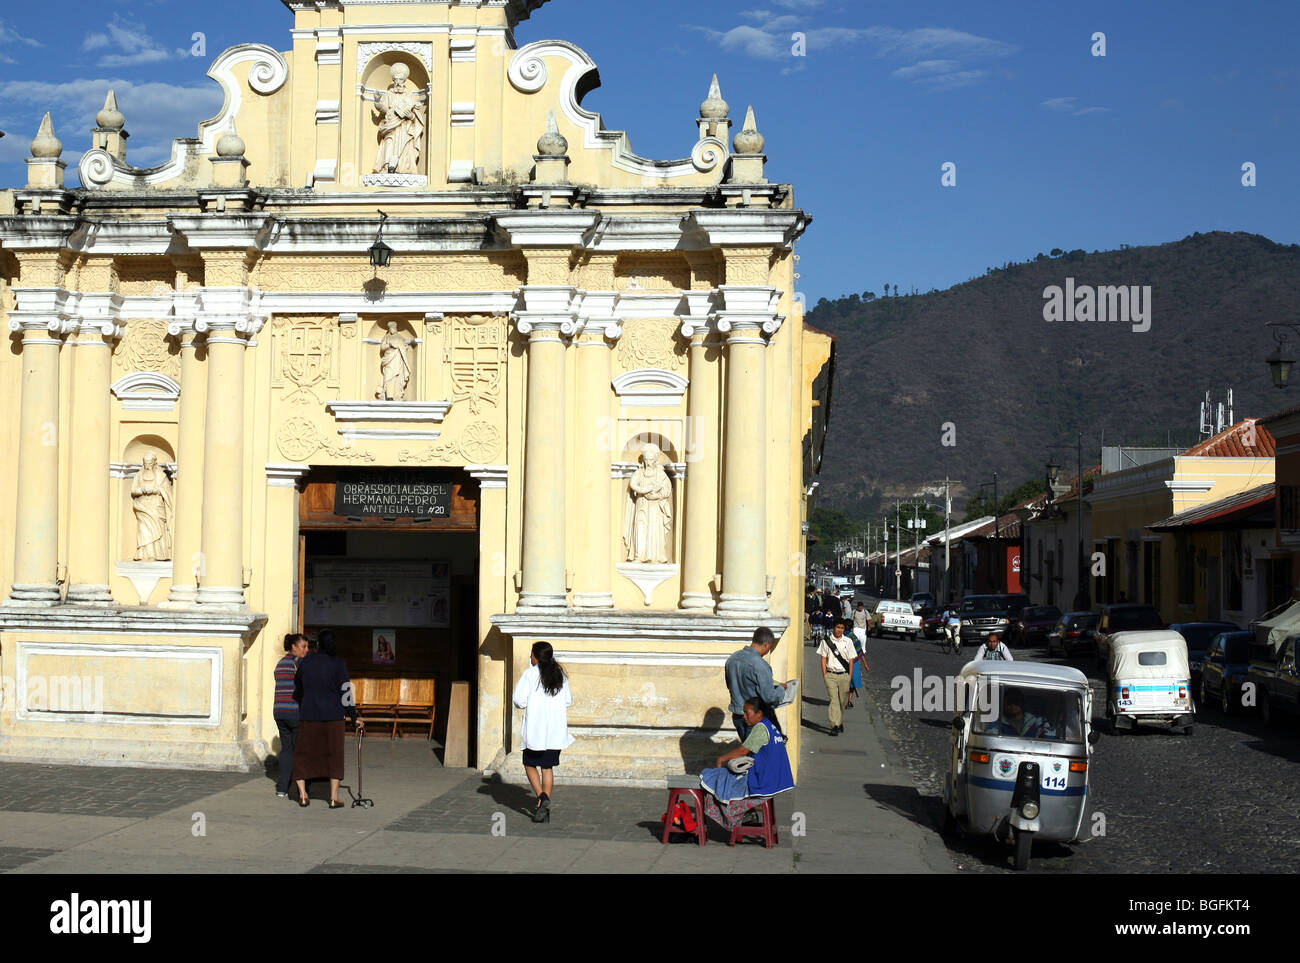 The Iglesia de Hermano Pedro. Antigua Guatemala, Guatemala, Central America Stock Photo